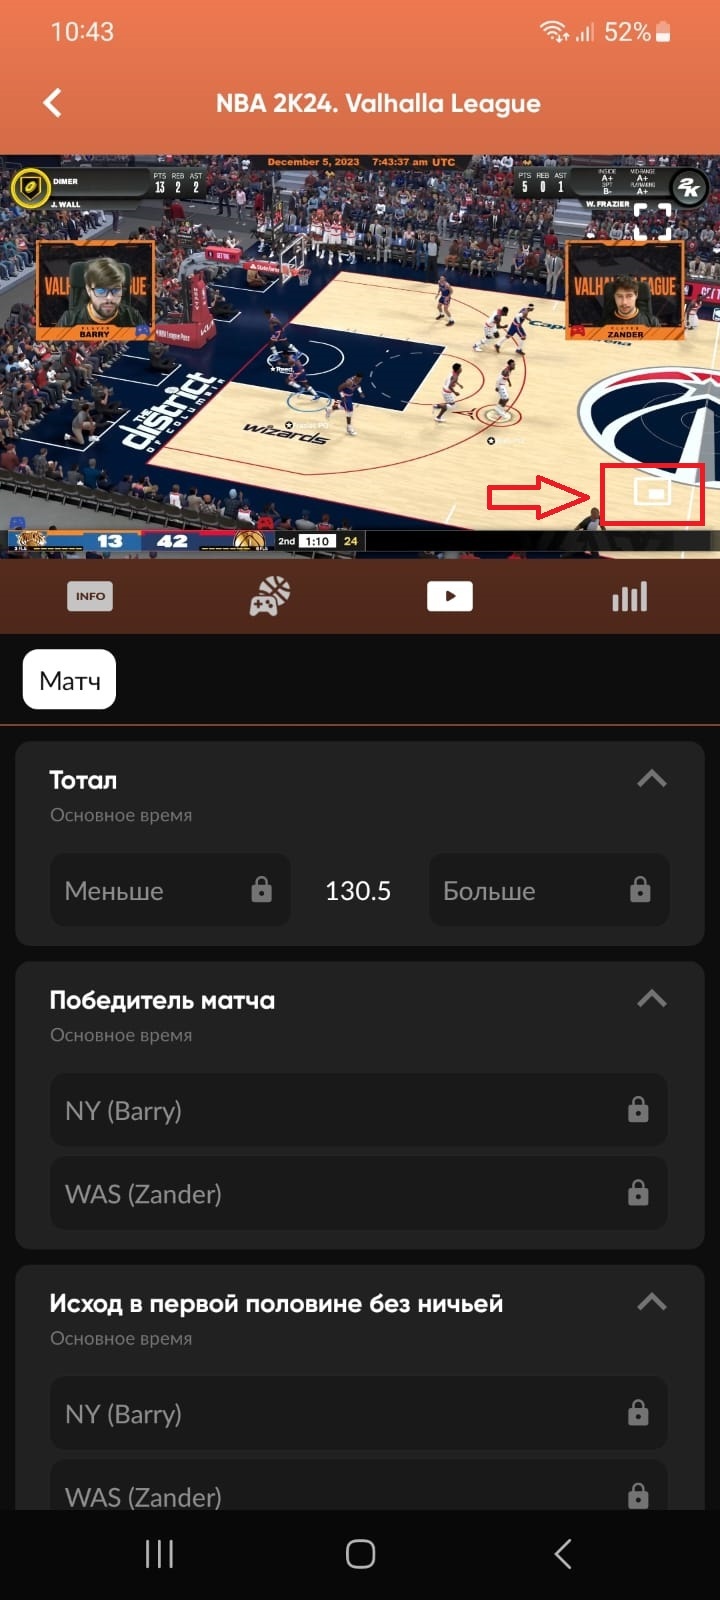 Лайв трансляция NBA 2K24 в мобильном приложении с возможностью выбора опции просмотра «Картинка в картинке»